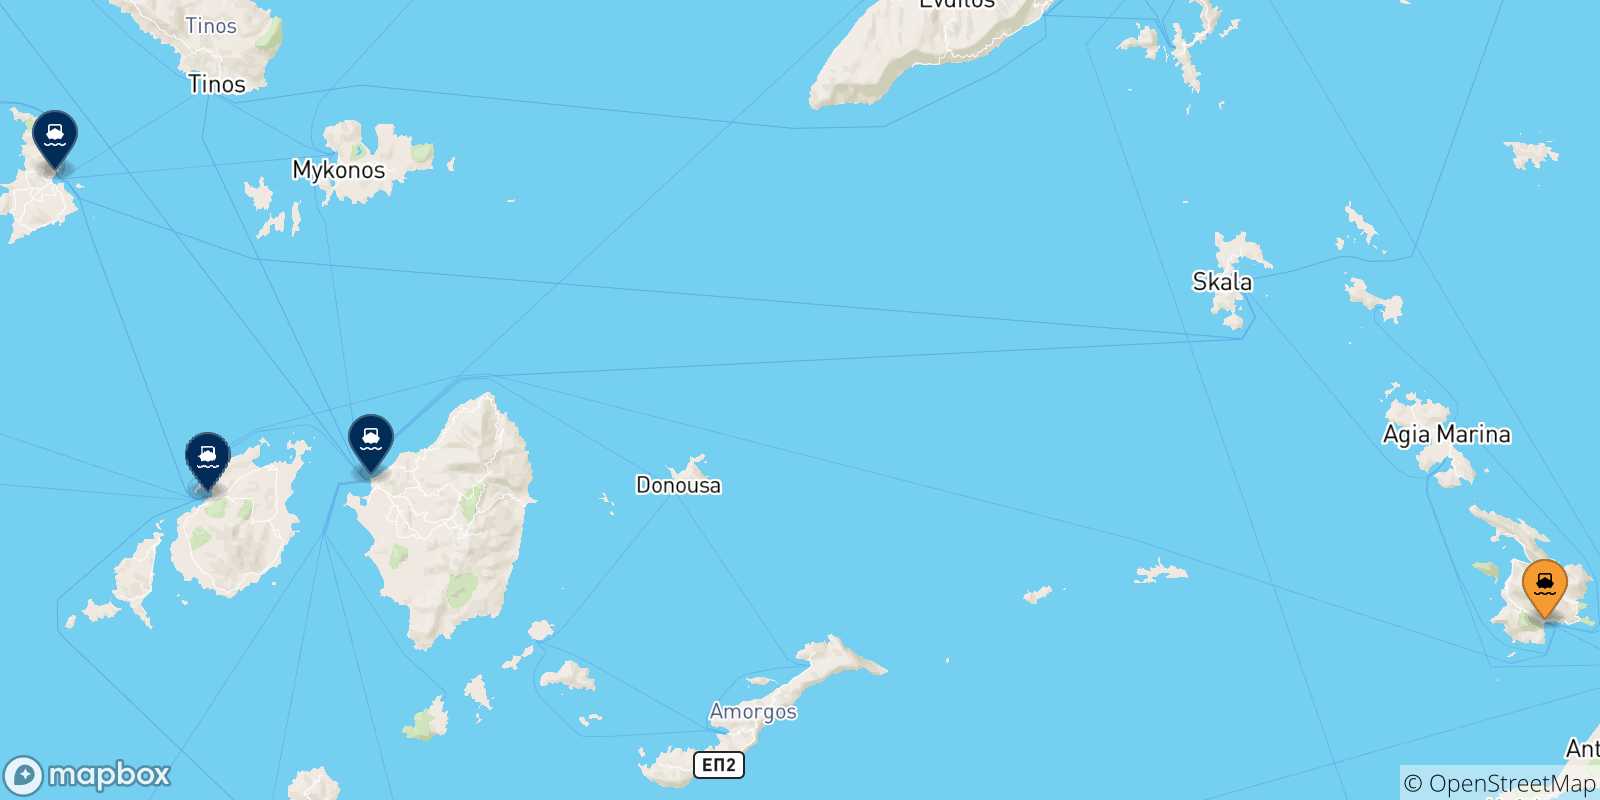 Mappa delle possibili rotte tra Kalymnos e le Isole Cicladi